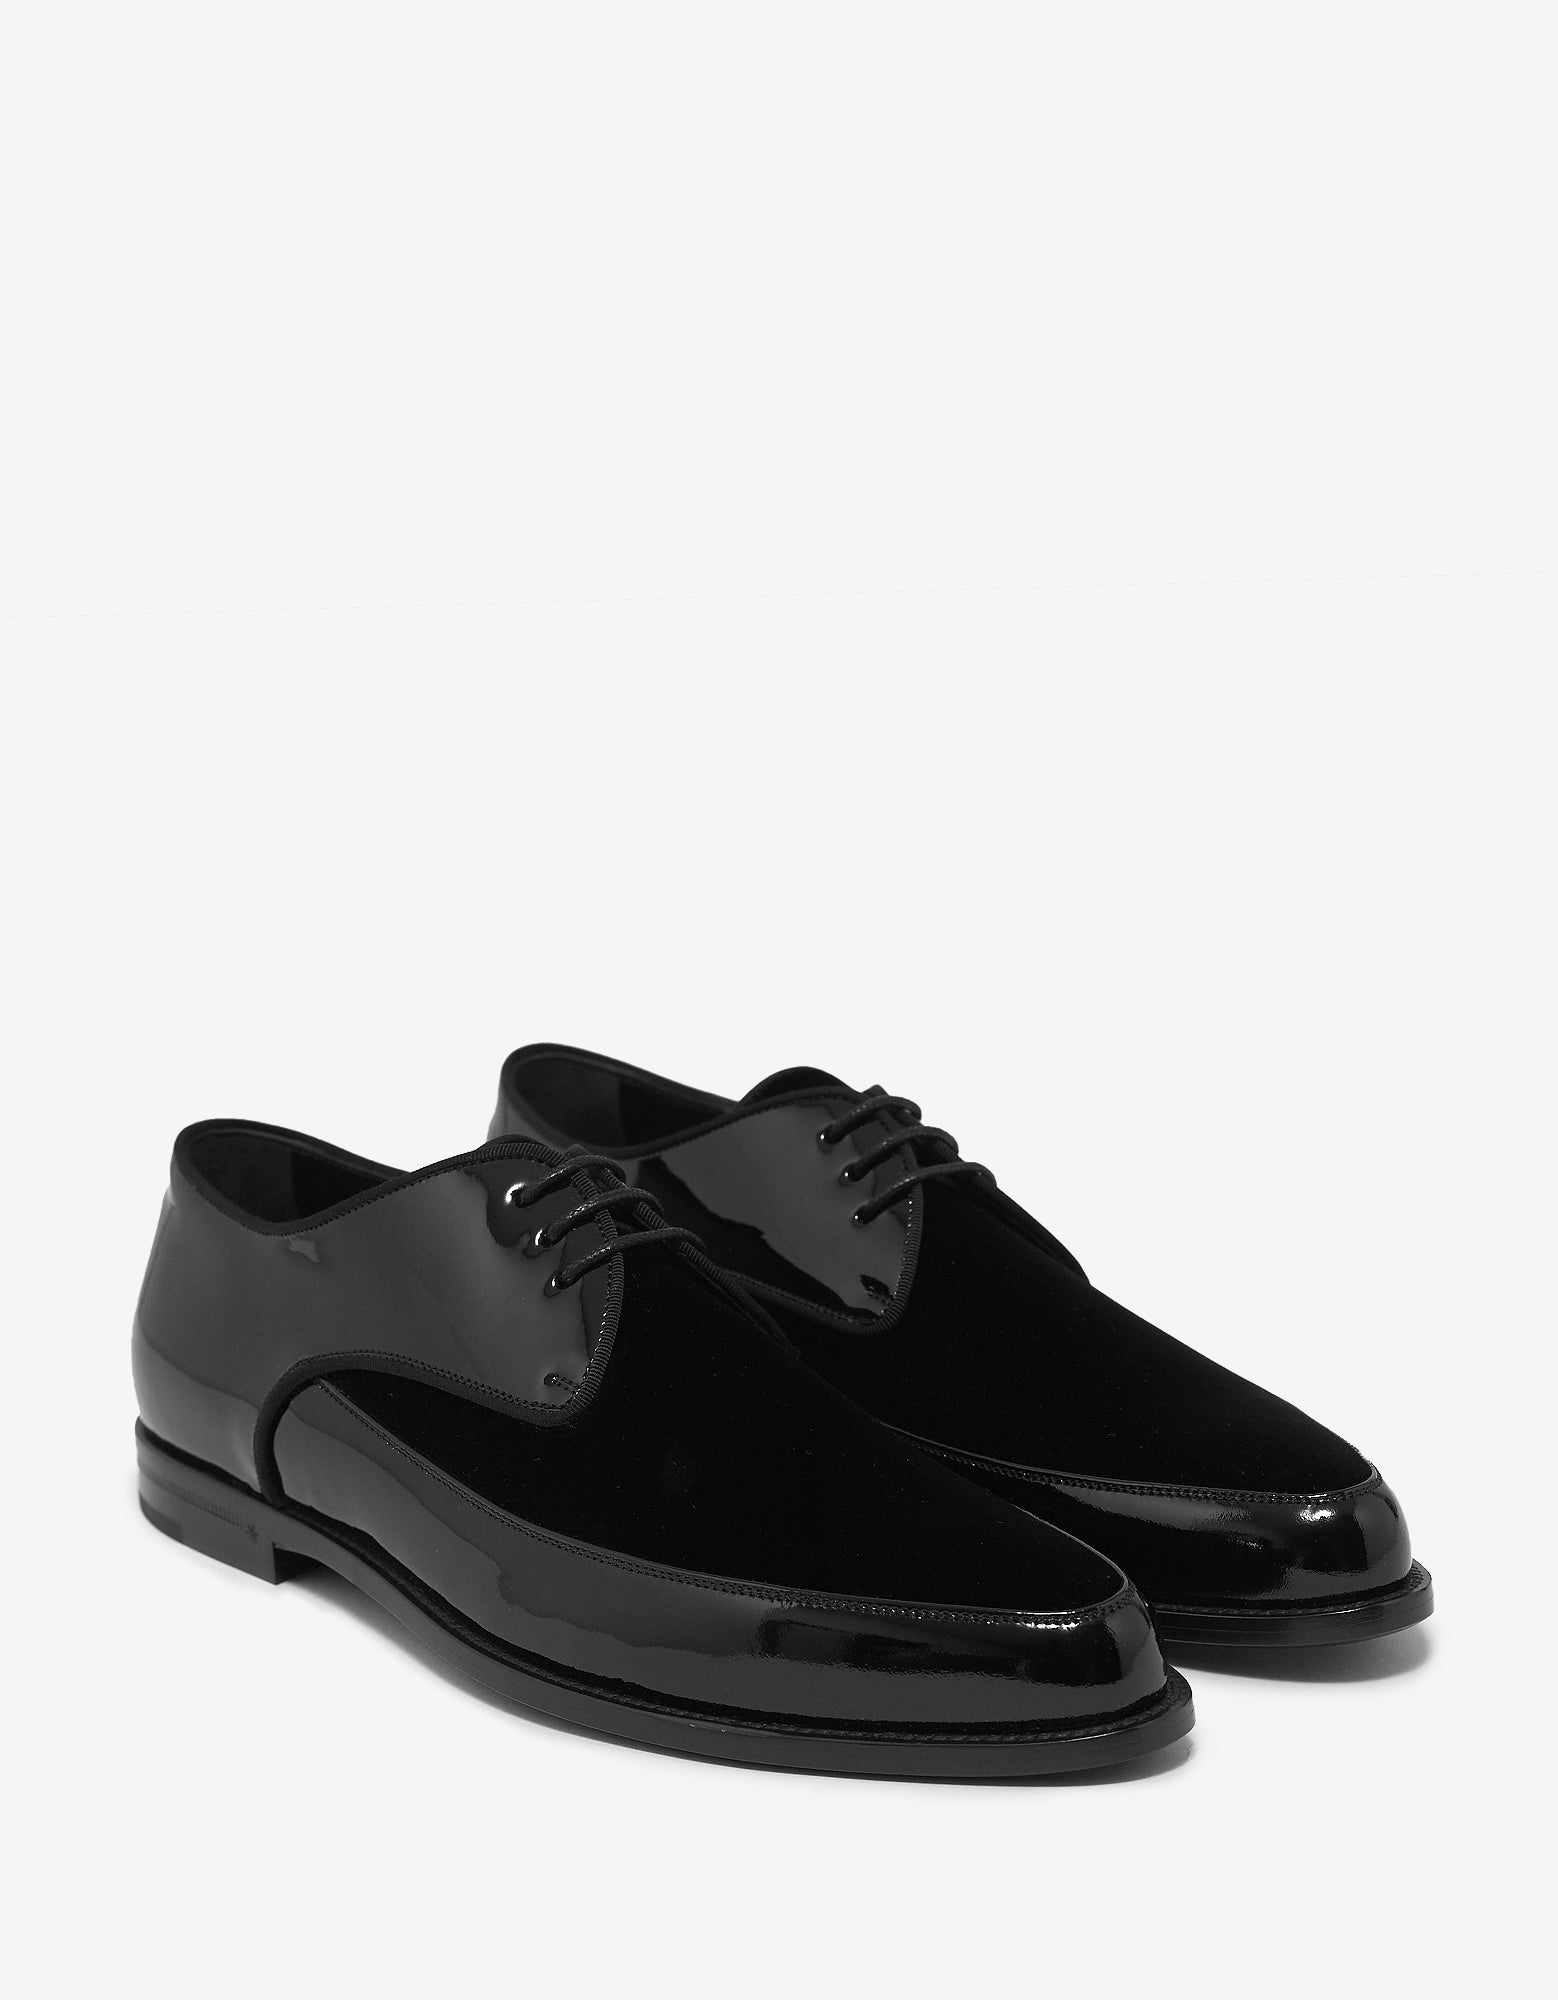 Saint Laurent Black Patent & Suede Leather Derby Shoes – ZOOFASHIONS.COM